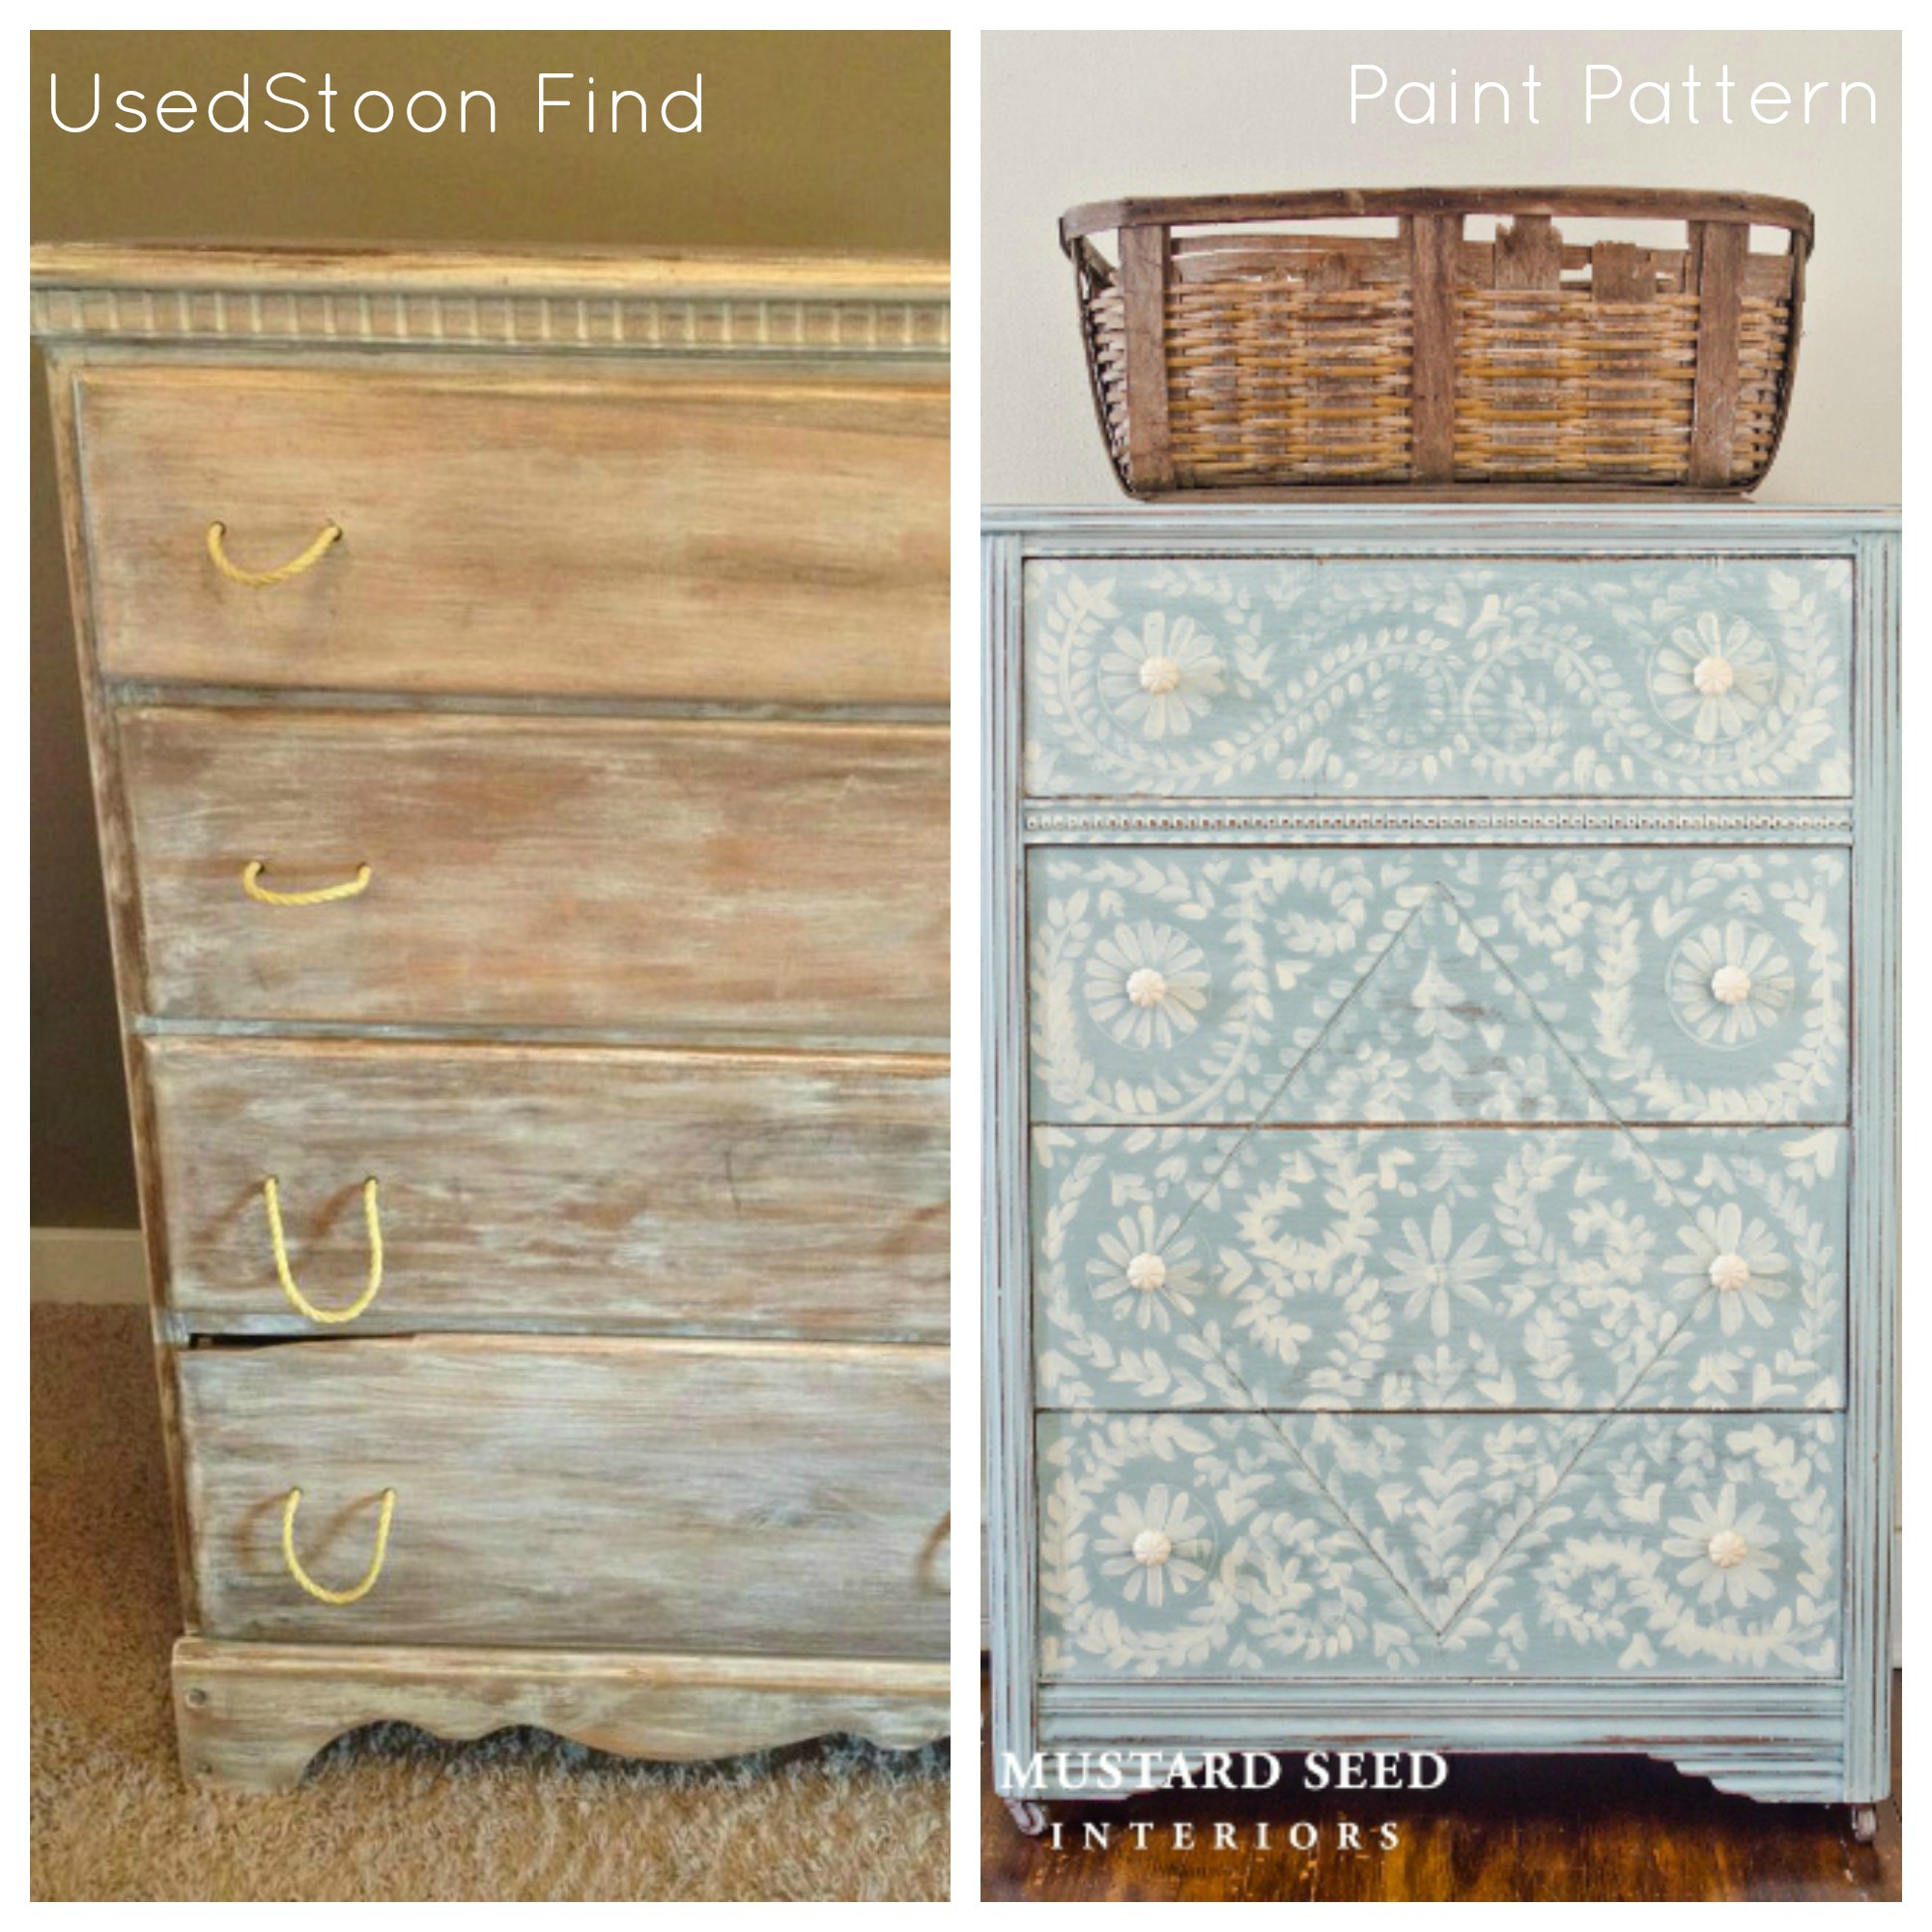 Used Ca Easy Used Furniture Diy Dressers Used Ca